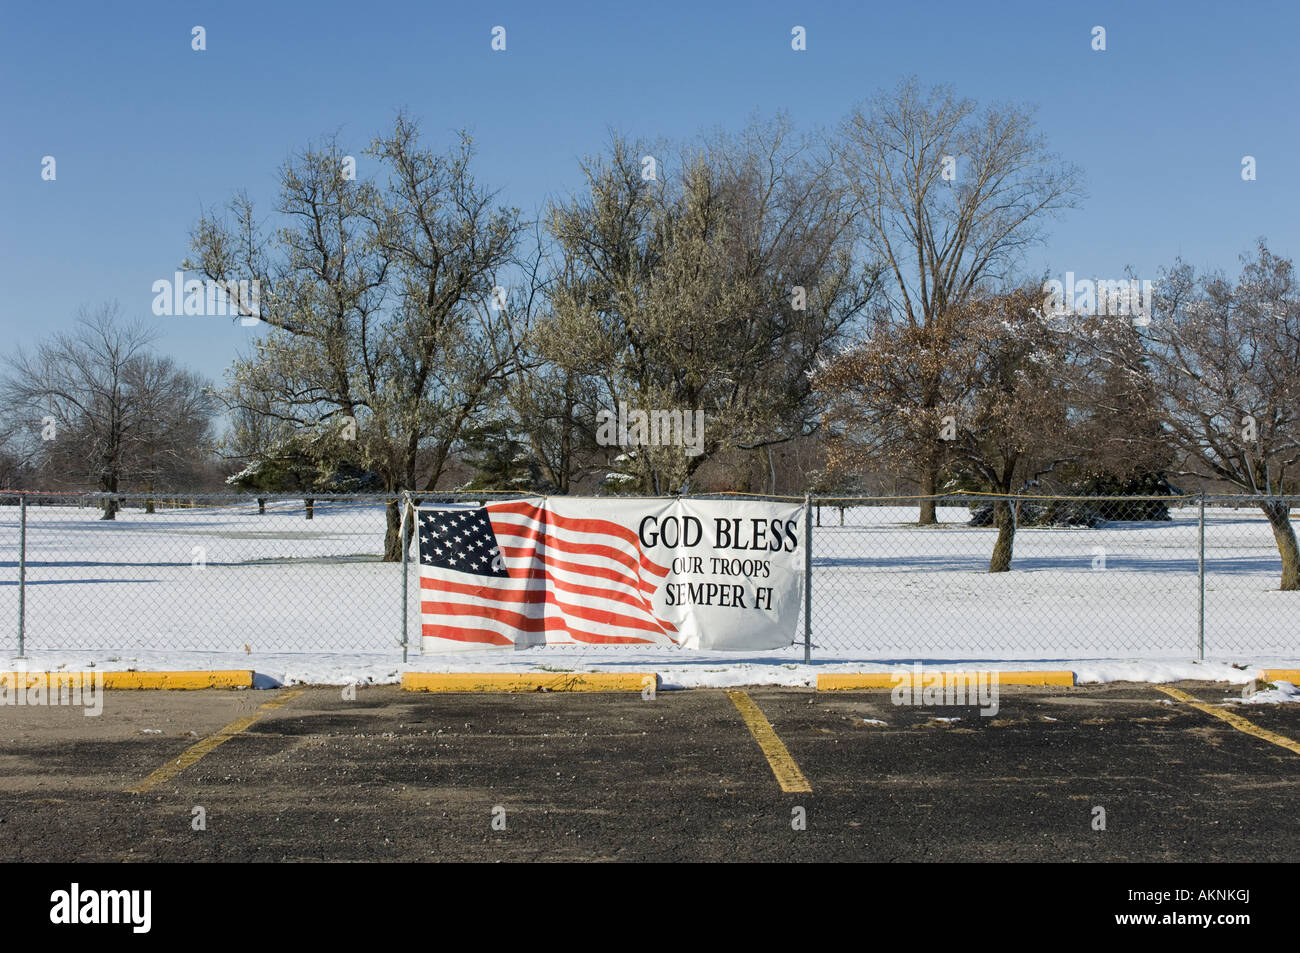 Melden Sie sich mit amerikanischen Flagge sagen: Gott segne unsere Truppen Semper Fi auf einem Golfplatz in Burton-Michigan-USA Stockfoto